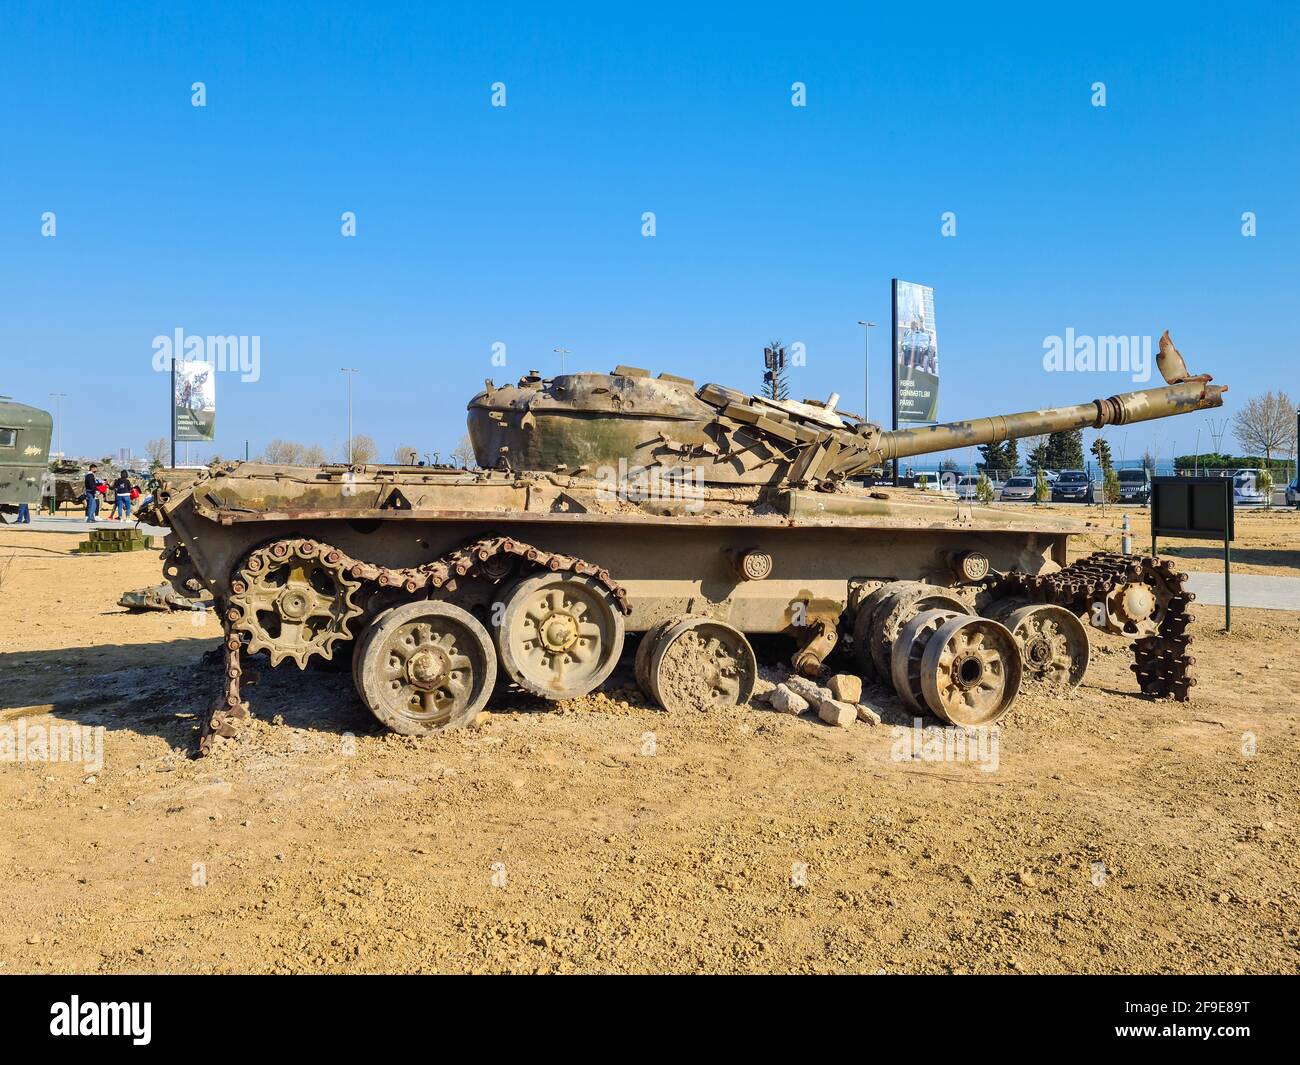 T-72 sowjetische/russische Hauptkampfpanzer, die erstmals 1971 in Produktion gingen - Baku, Aserbaidschan, 04-16-2021 Stockfoto